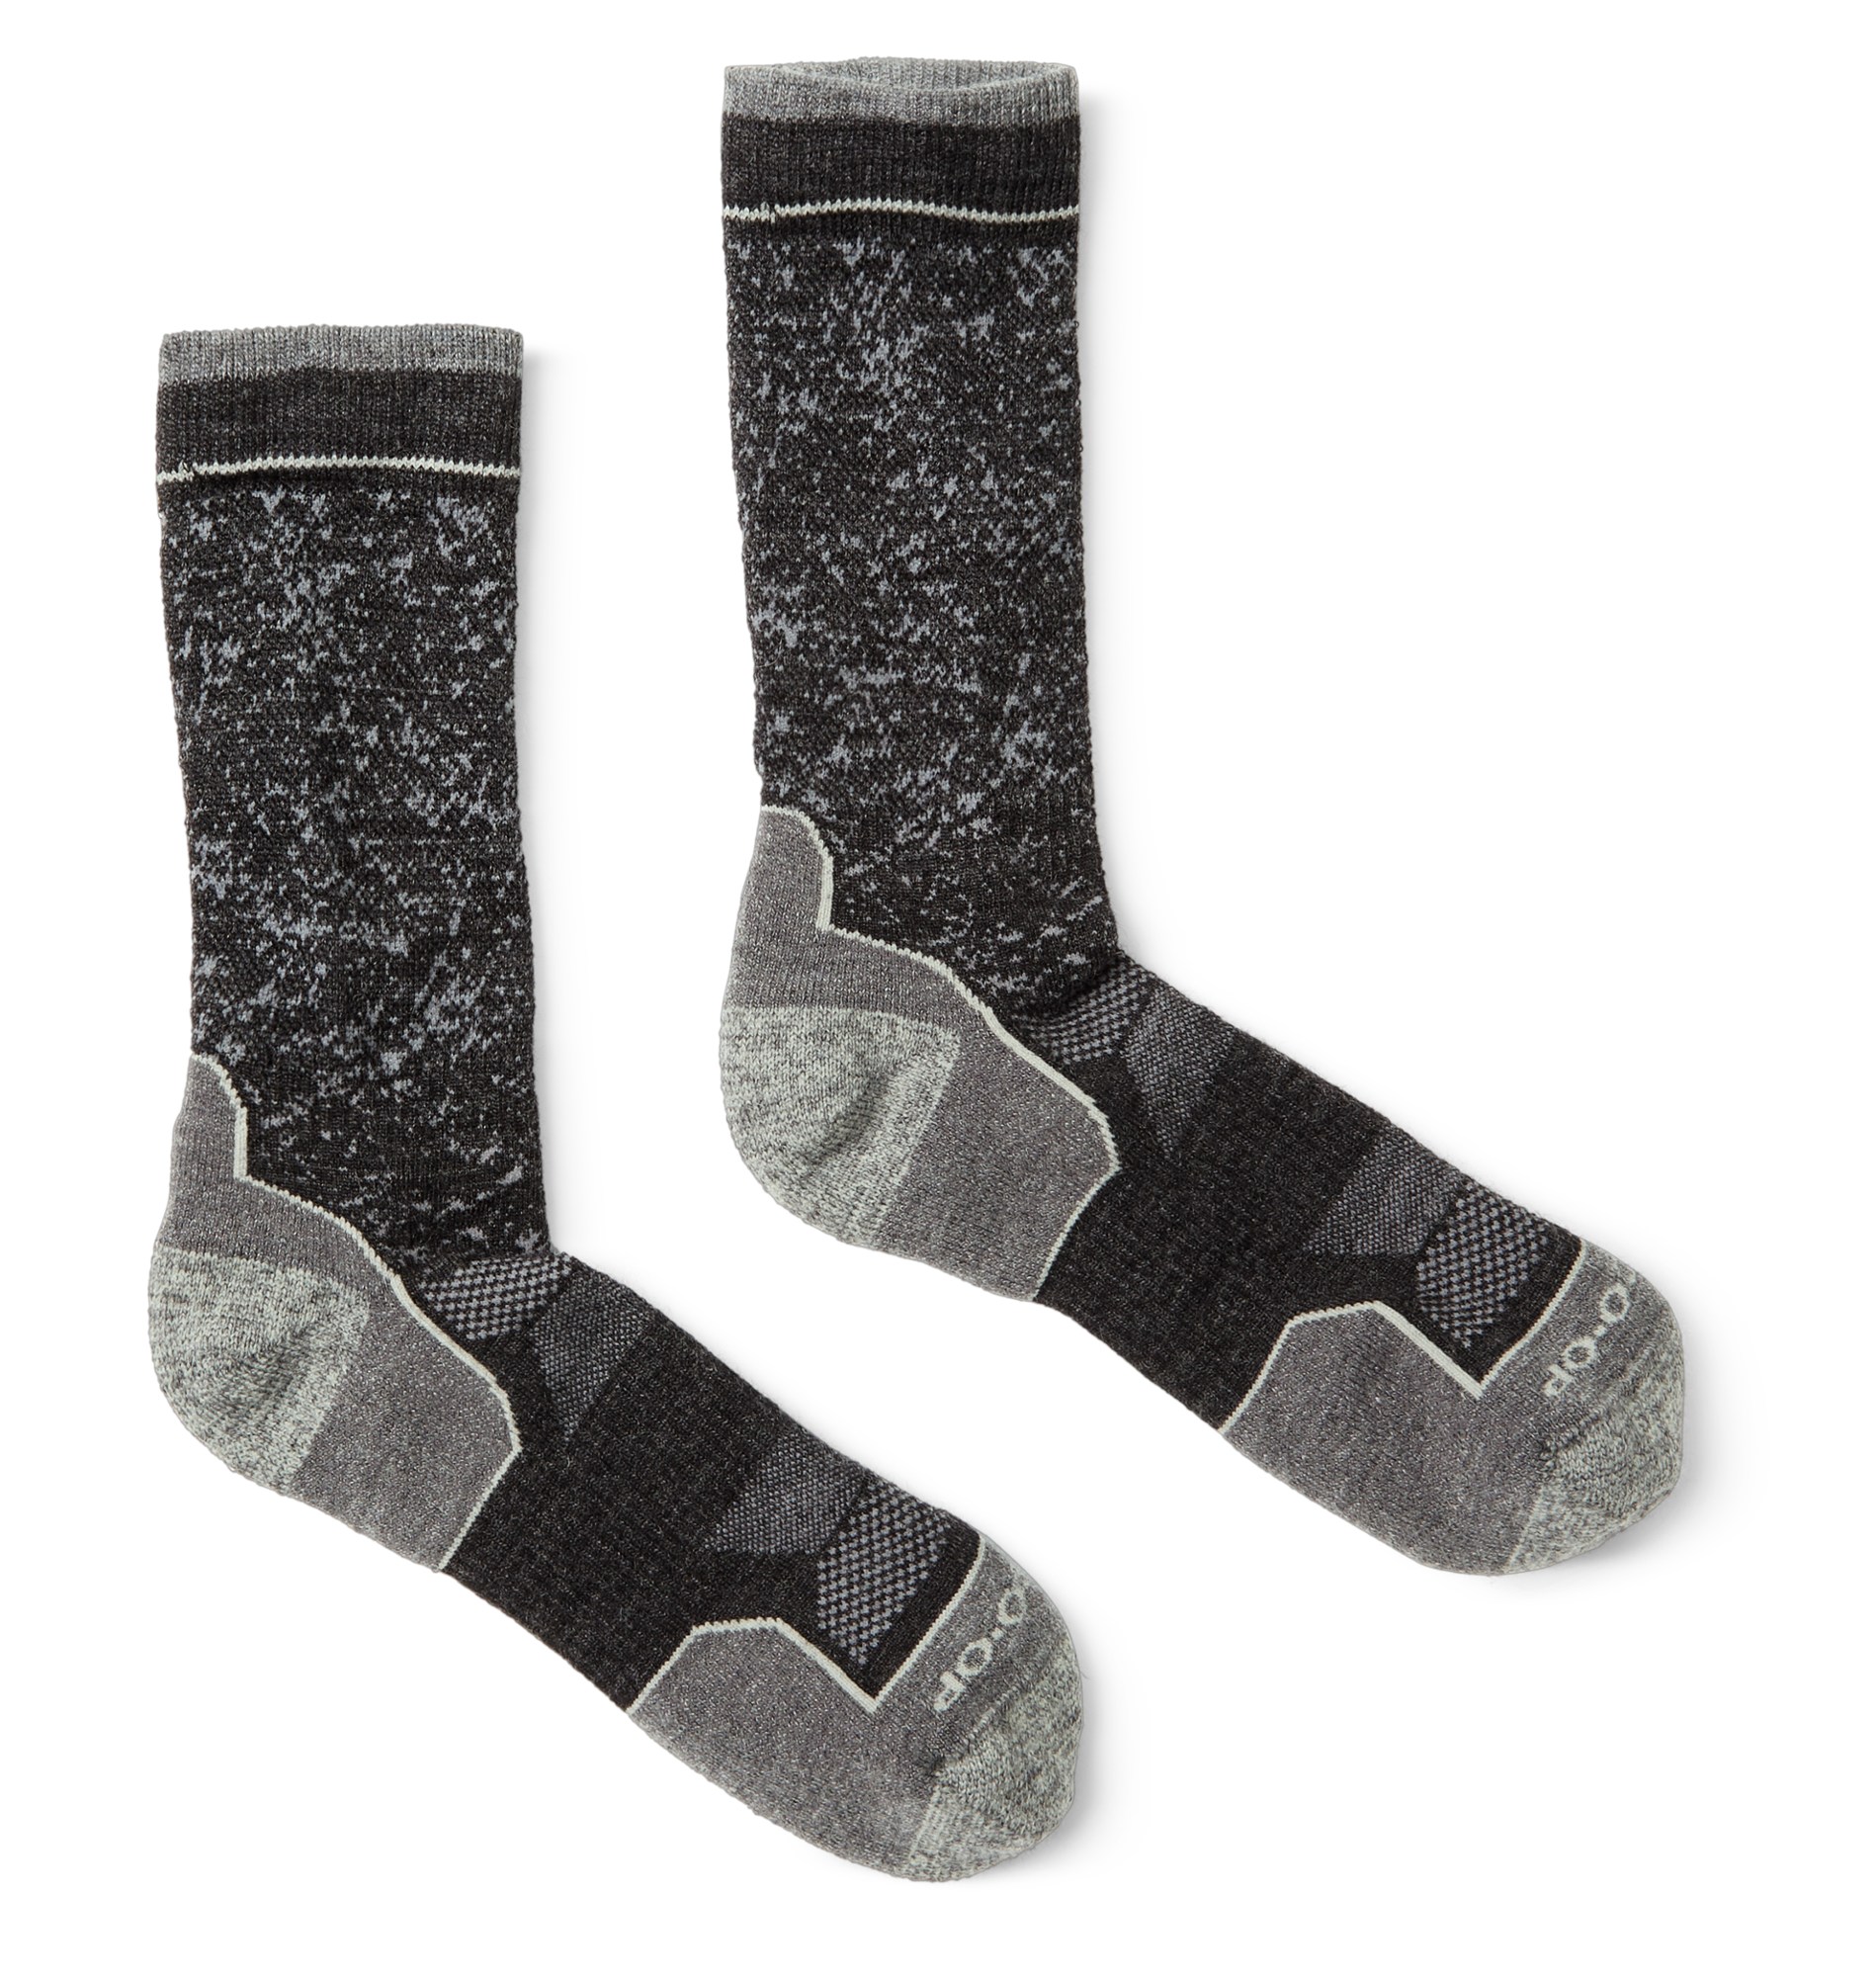 Легкие носки Flash Crew из мериносовой шерсти REI Co-op, серый